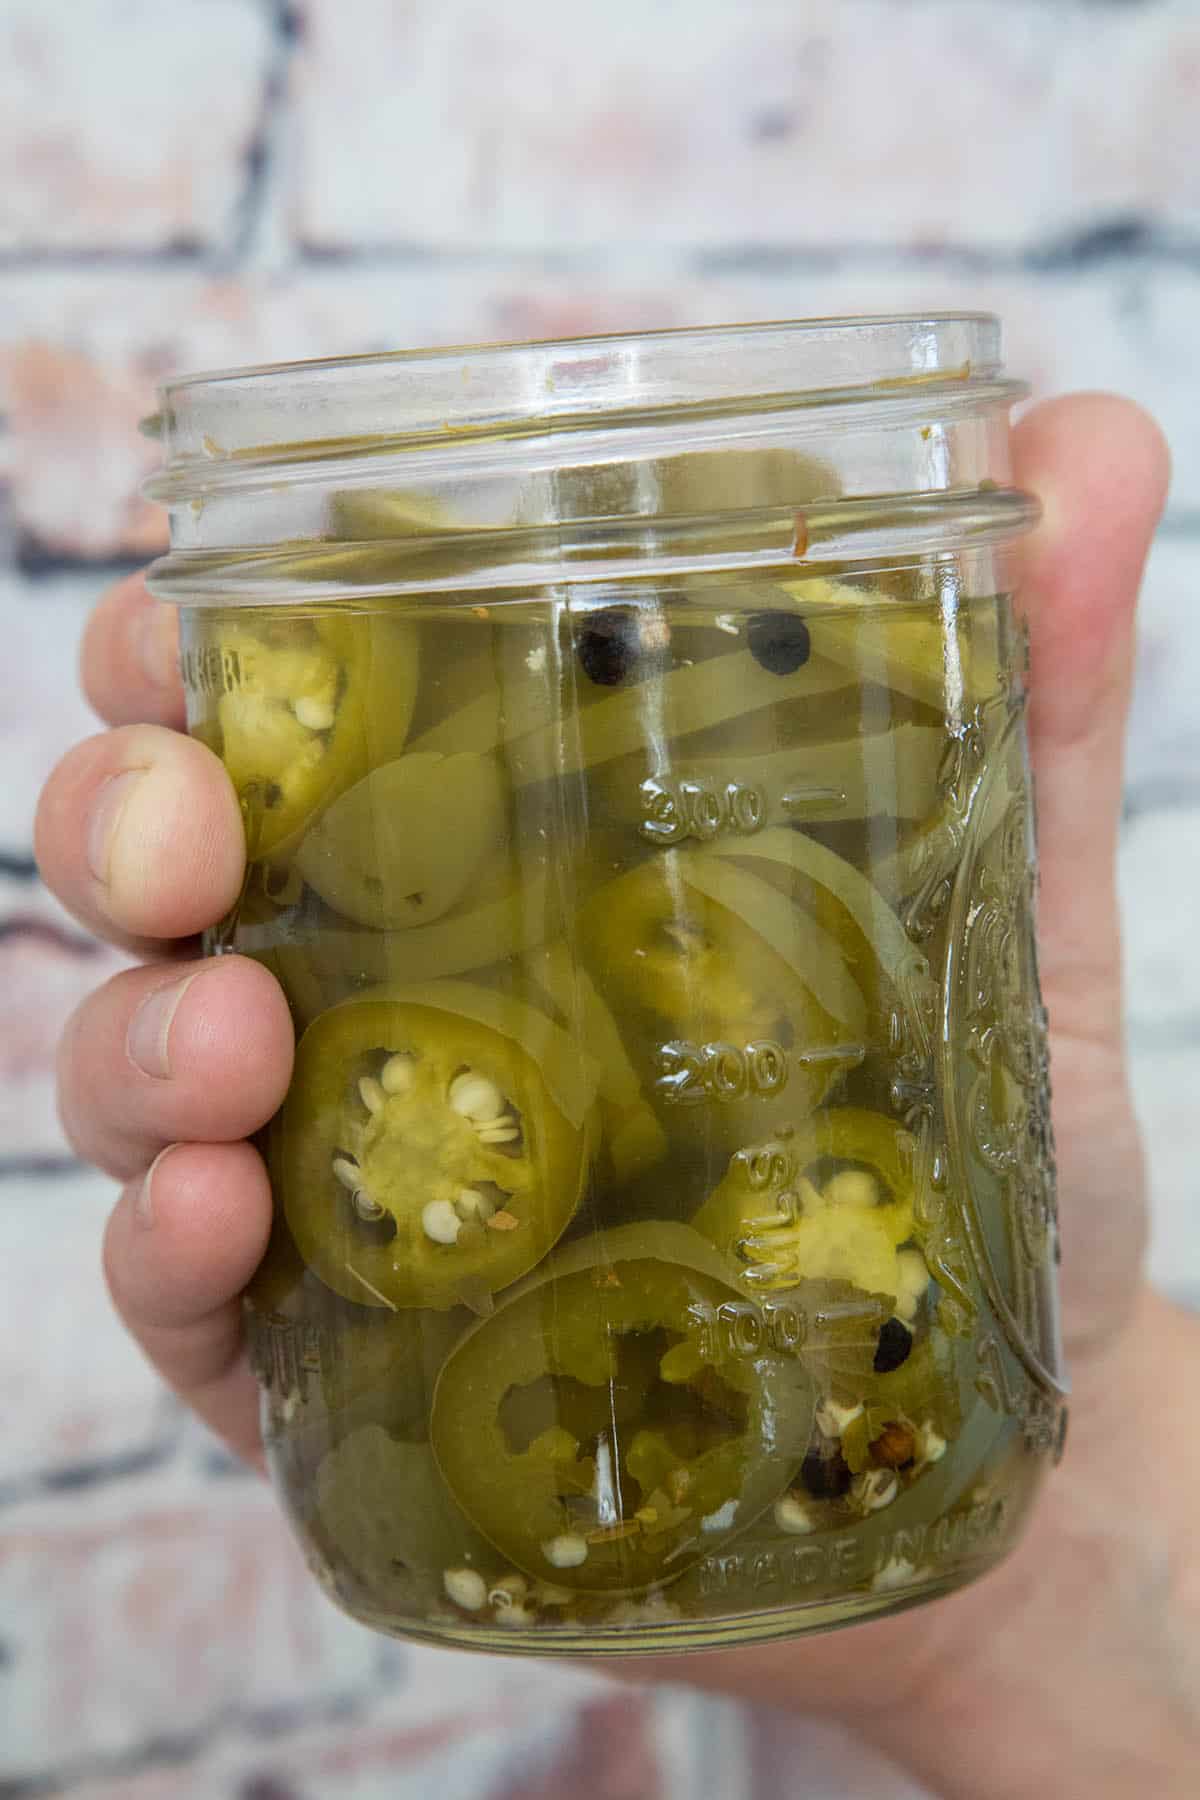 Holding a Jar of Pickled Jalapenos